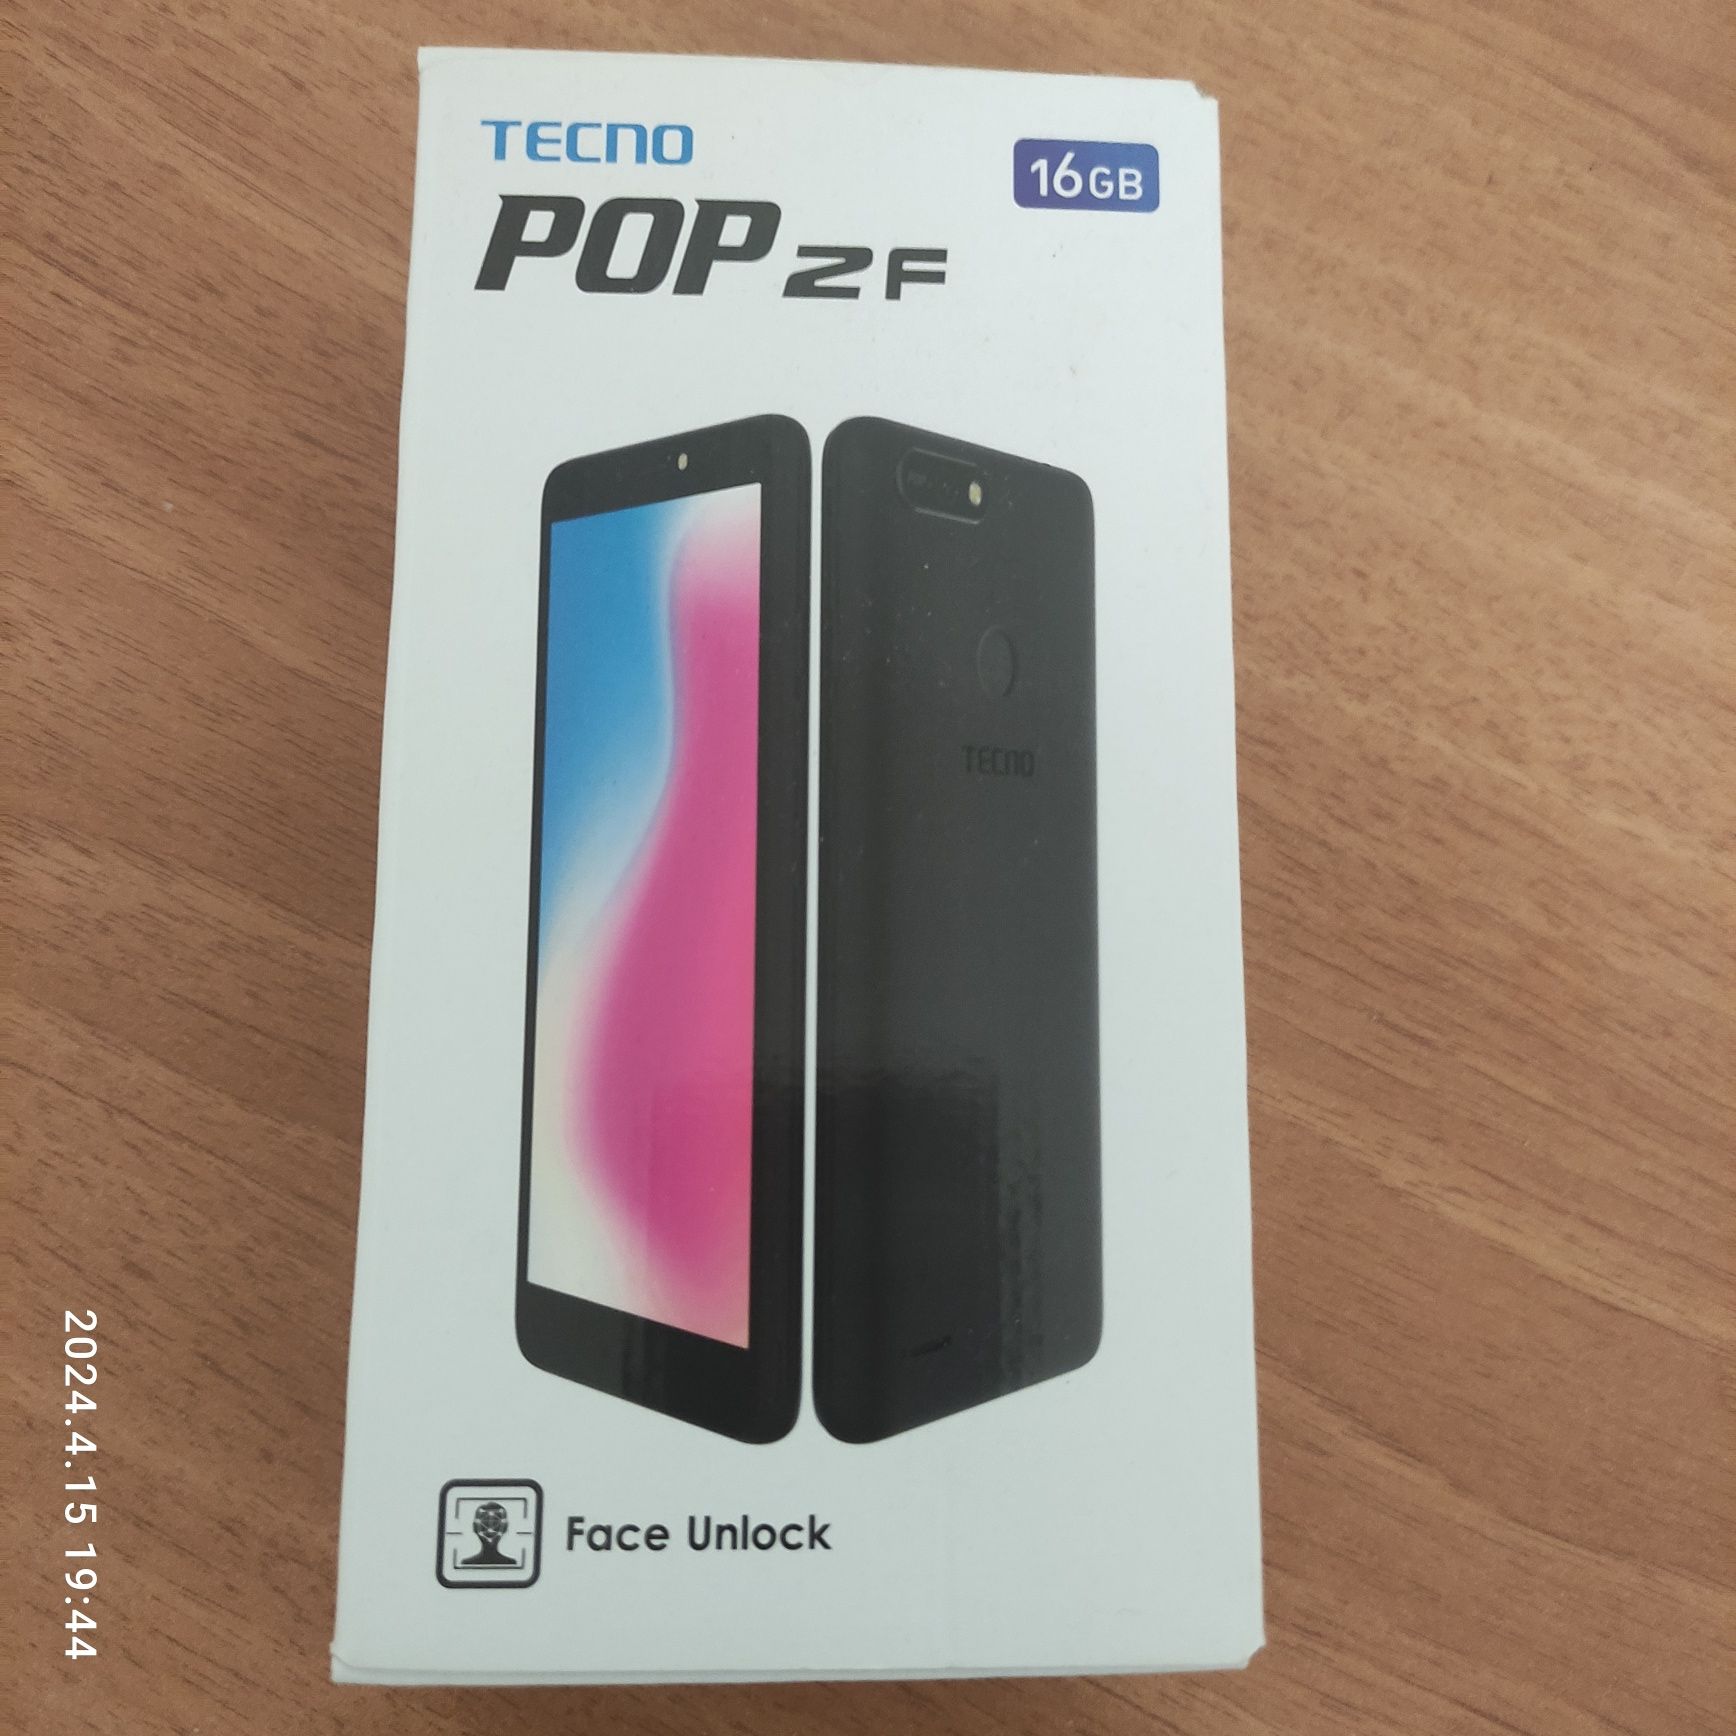 Телефон Tecno Pop 2F, 2 симкарты